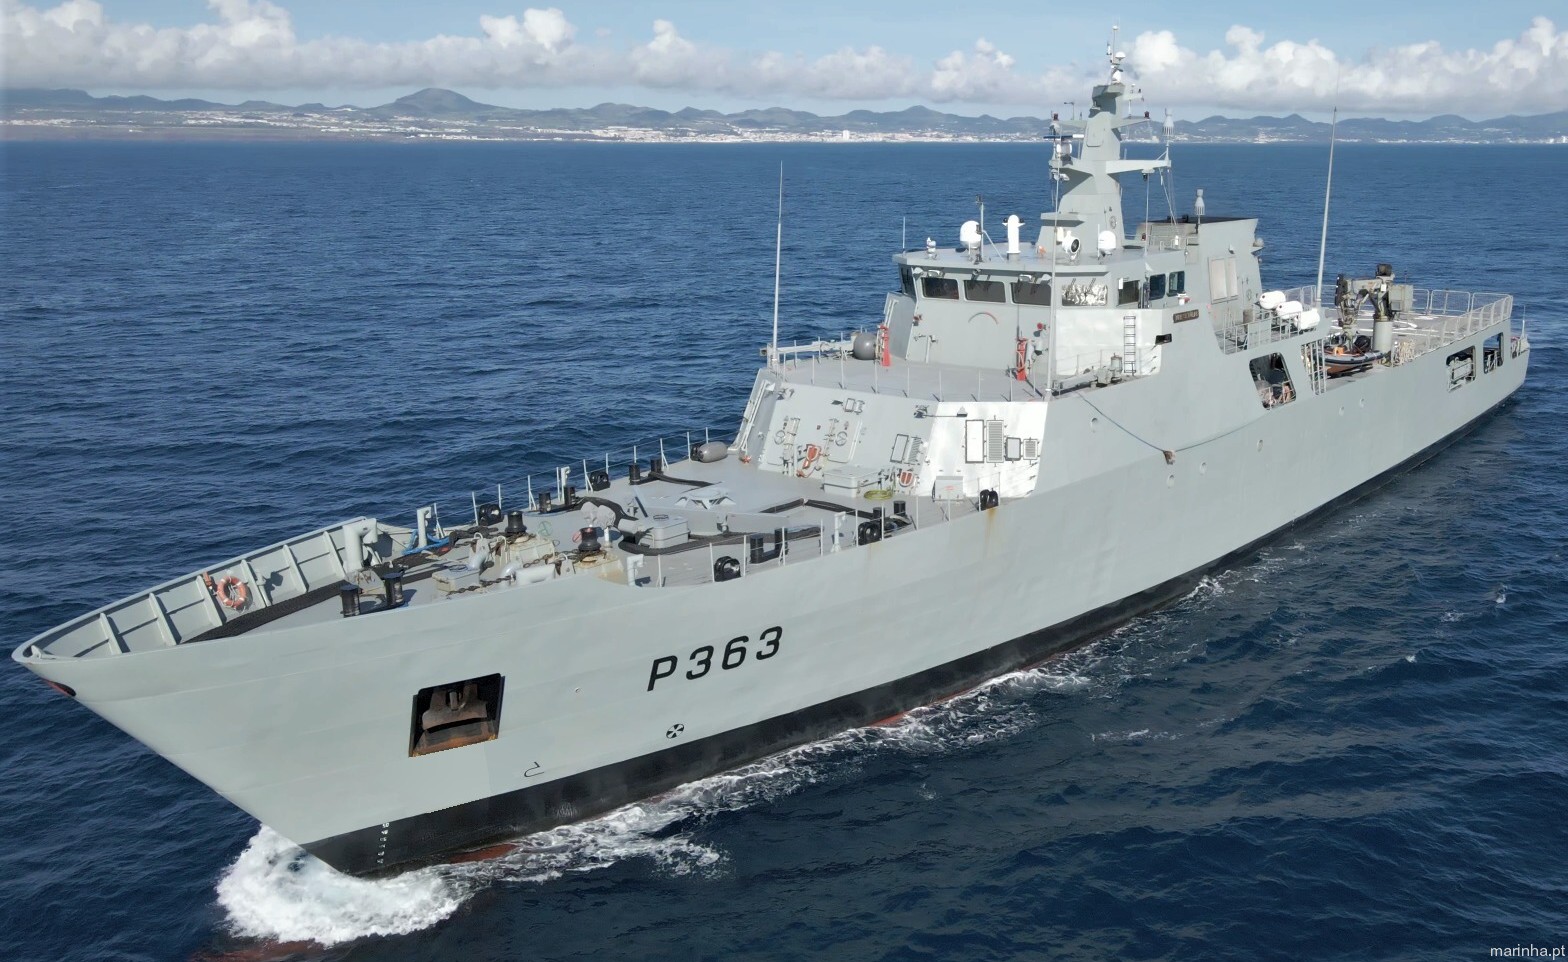 p-363 nrp setubal viana do castelo class offshore patrol vessel opv portuguese navy marinha 07